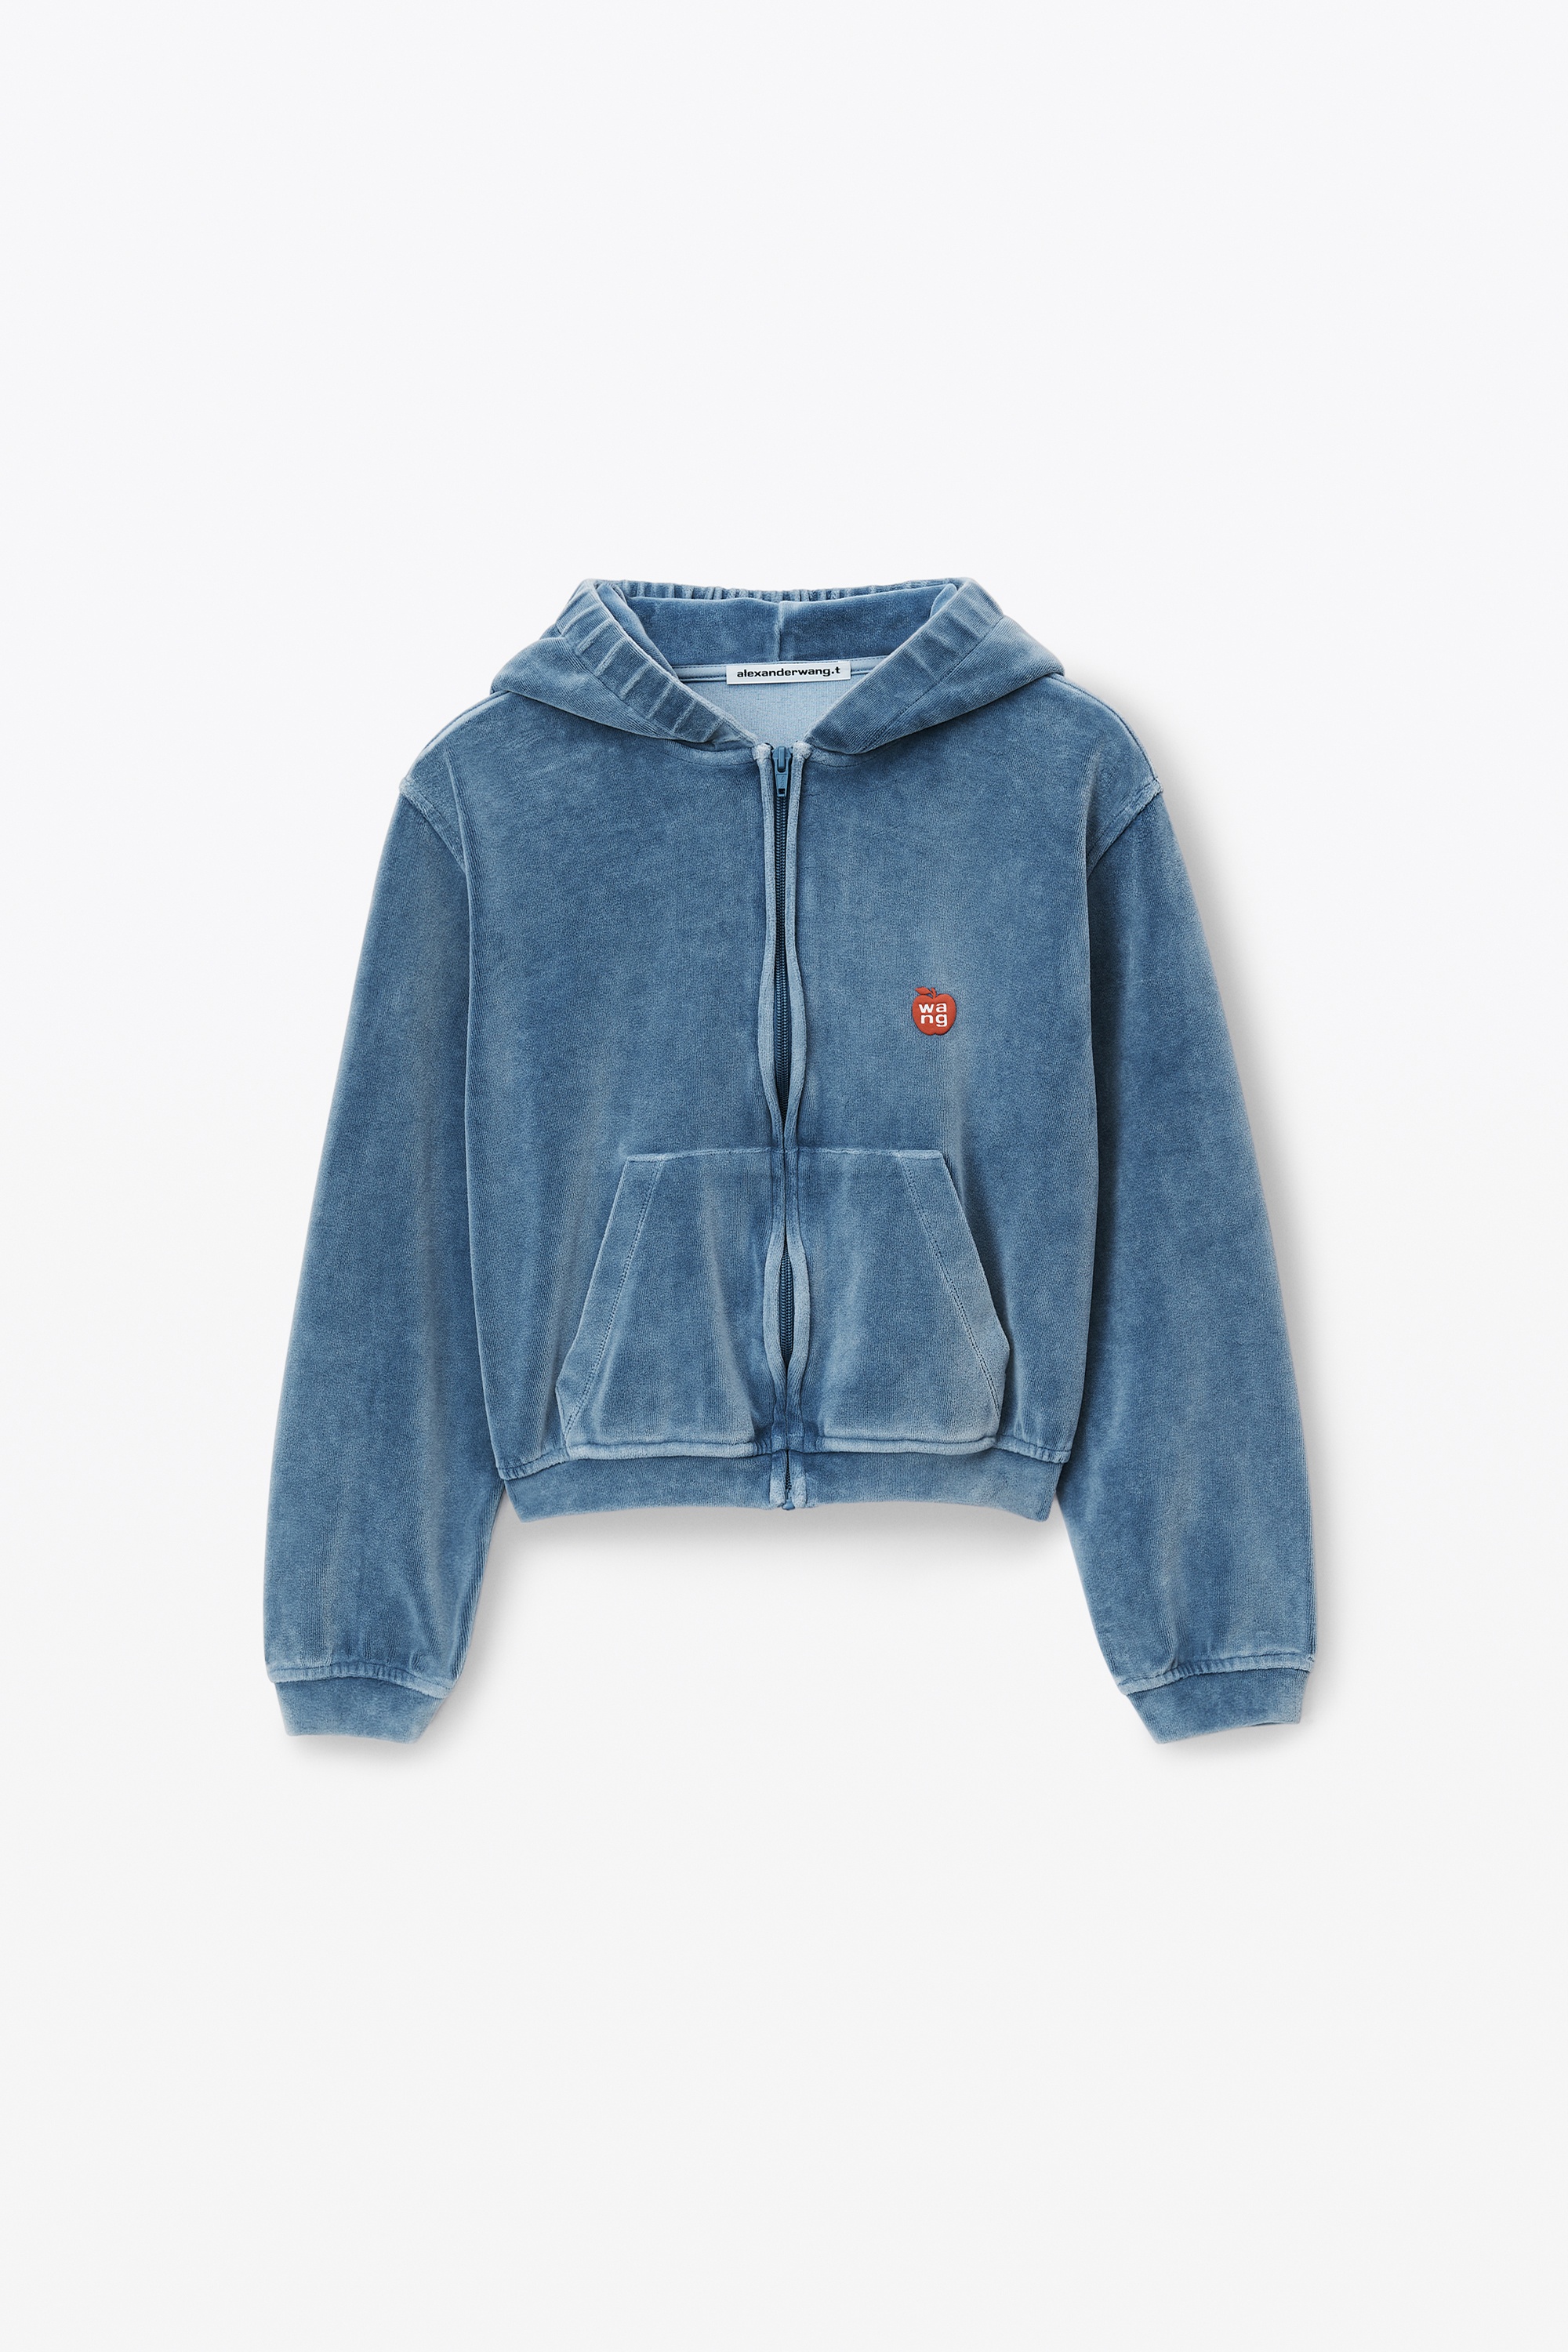 apple logo shrunken zip up hoodie in velour - 1